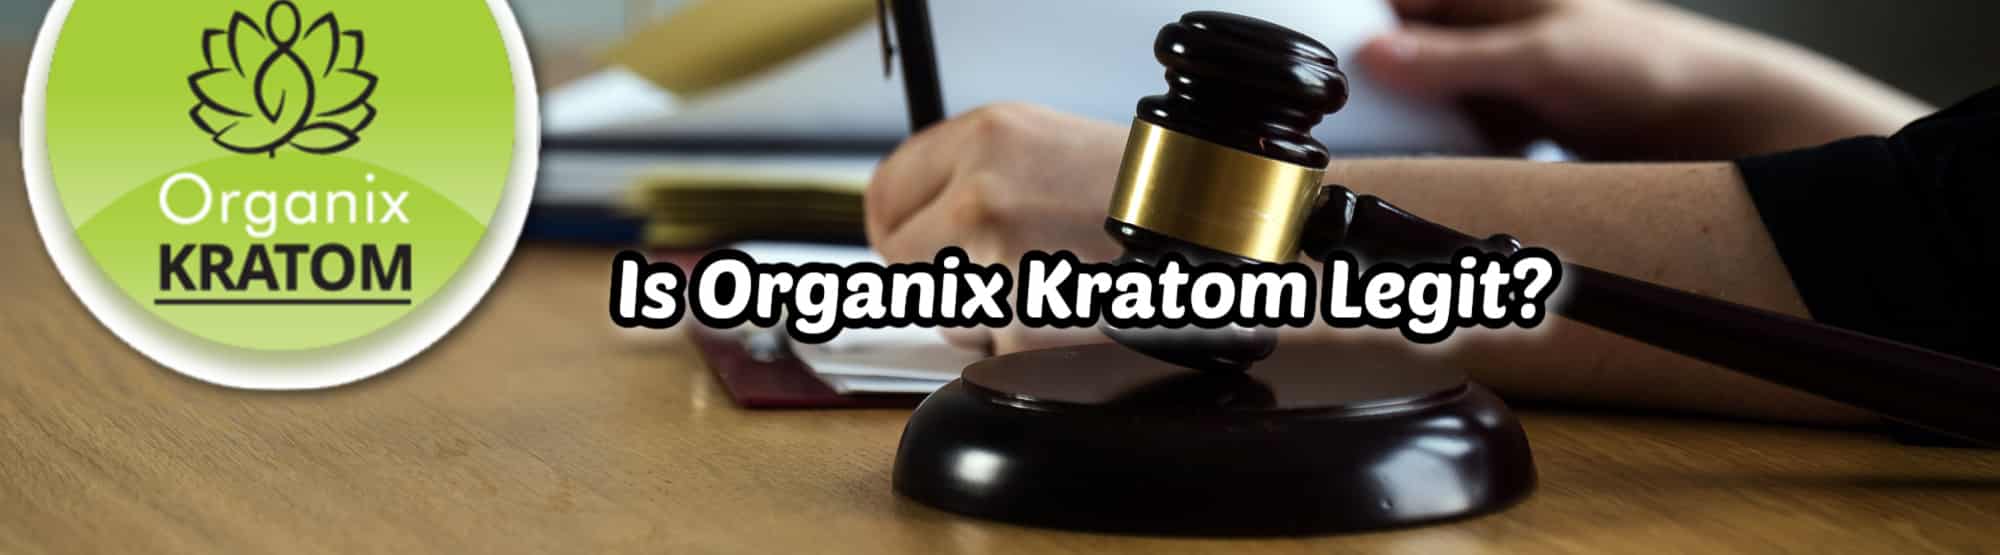 image of is organix kratom legit